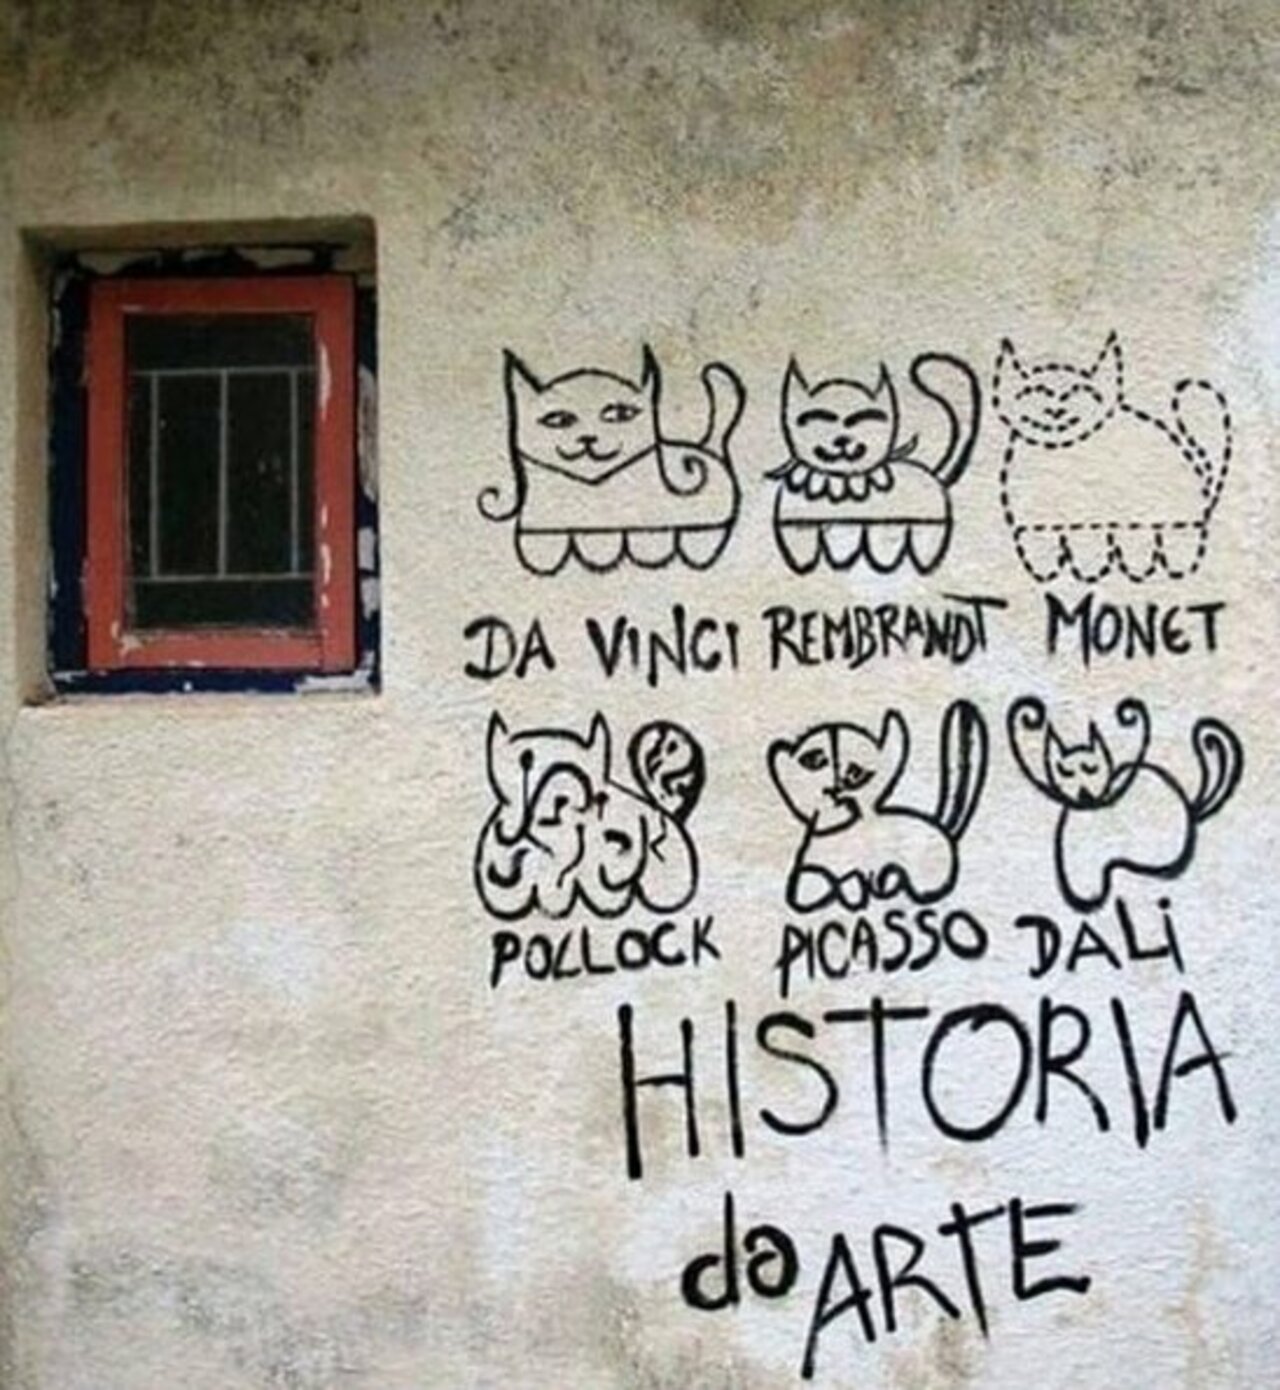 A history of art, expressed through the eternal medium of cats  -- #globalstreetart #streetart #mural #murals #graffiti https://t.co/3yFU4kGVnC